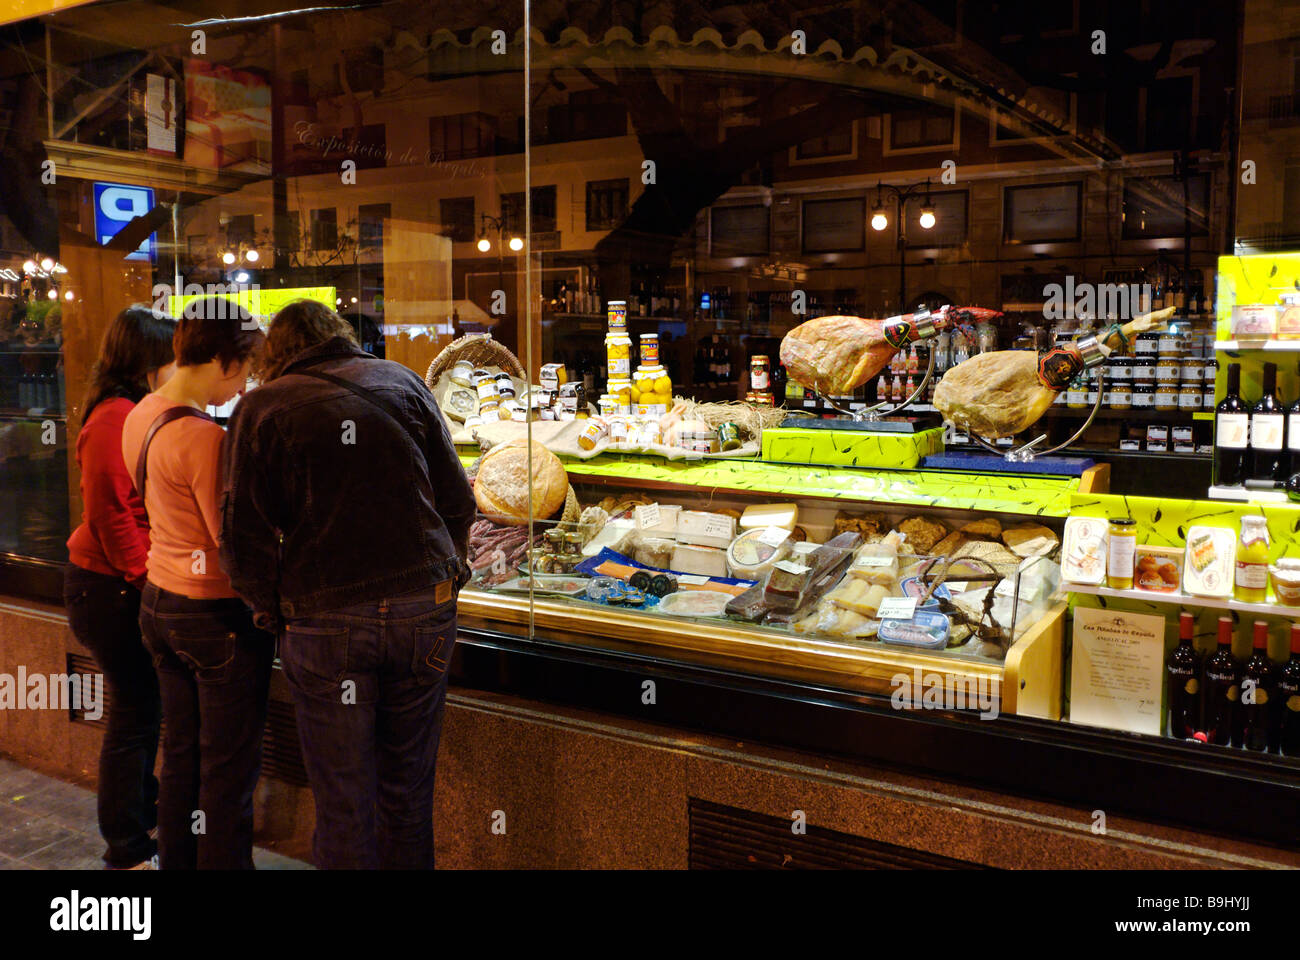 Fenêtre Personnes shopping au traiteur gastronomique espagnol supérette dans le centre-ville historique de Valence Espagne Banque D'Images